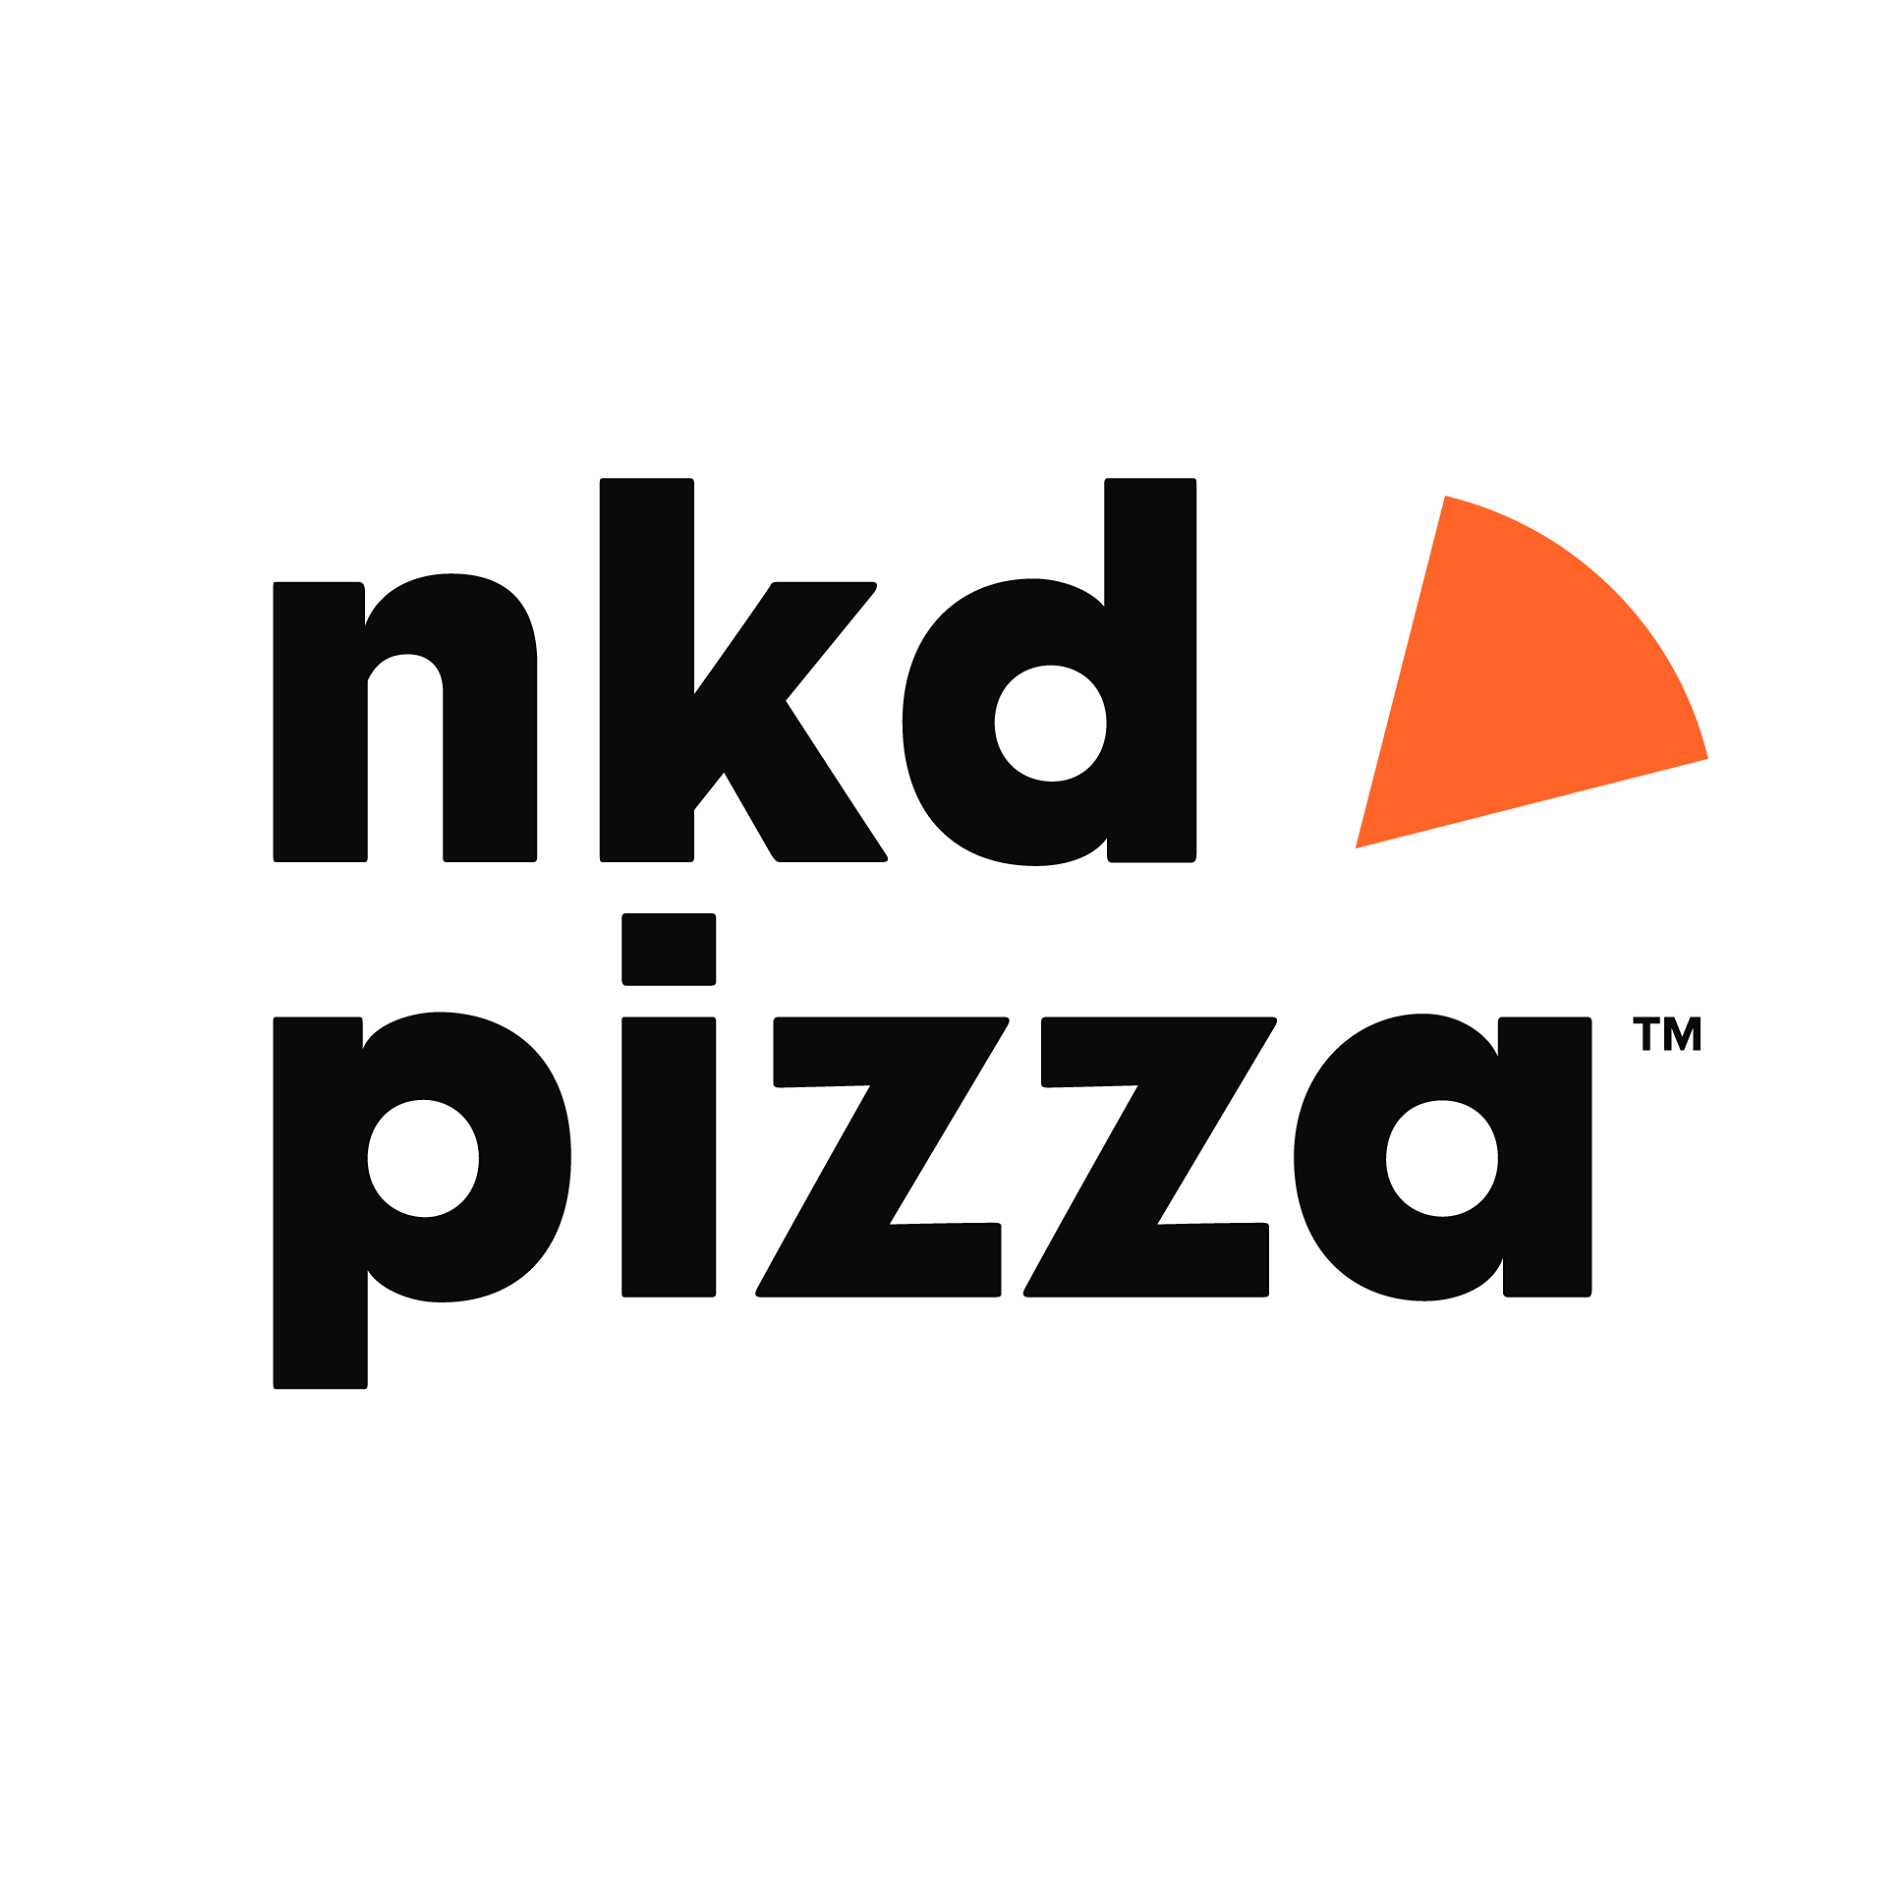 NKD Pizza